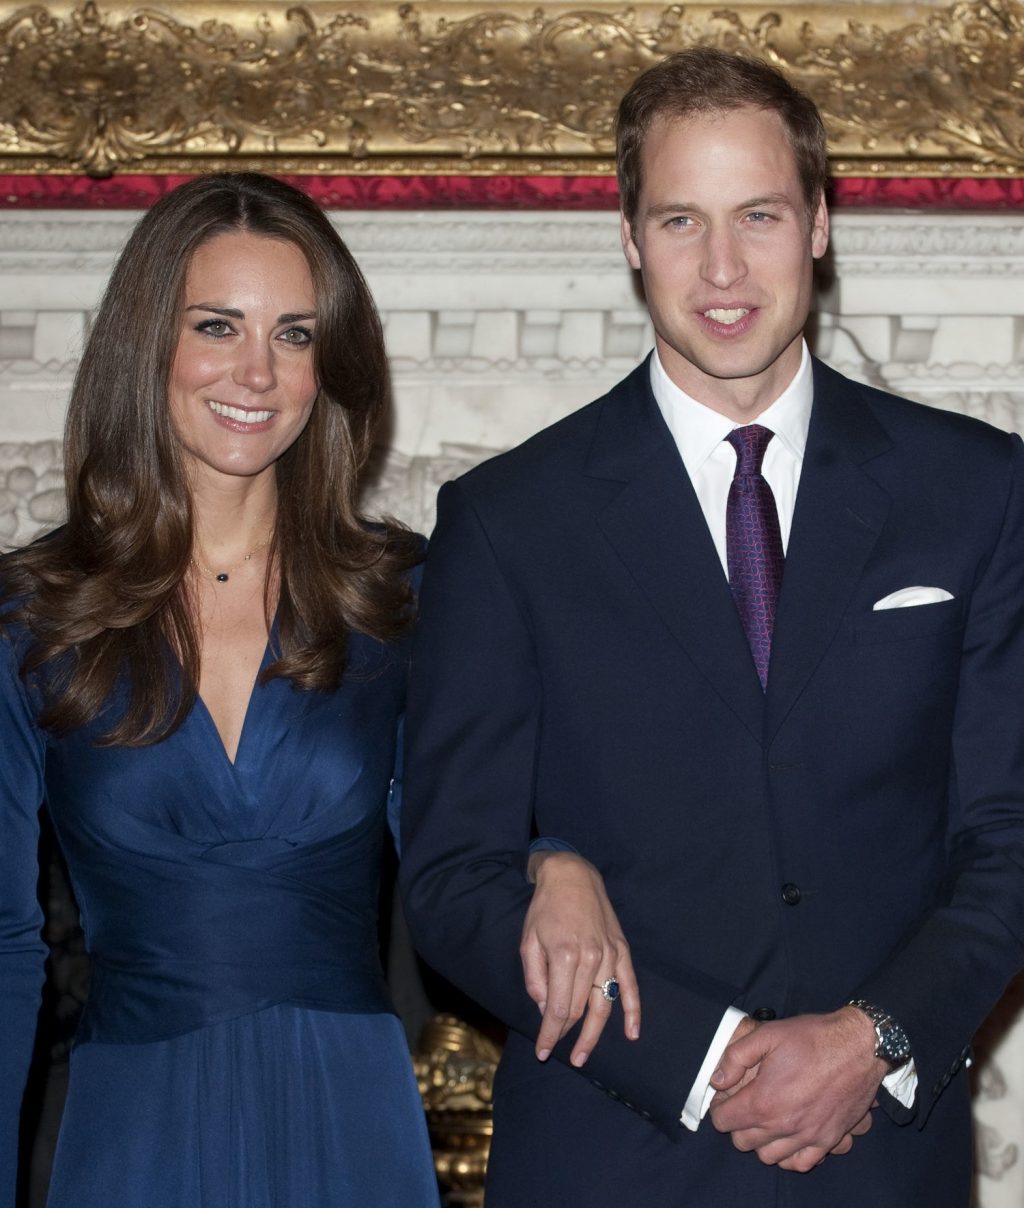 Cặp đôi hoàng gia đã quyết định "về chung một nhà" vào năm 2010 sau tám năm yêu nhau